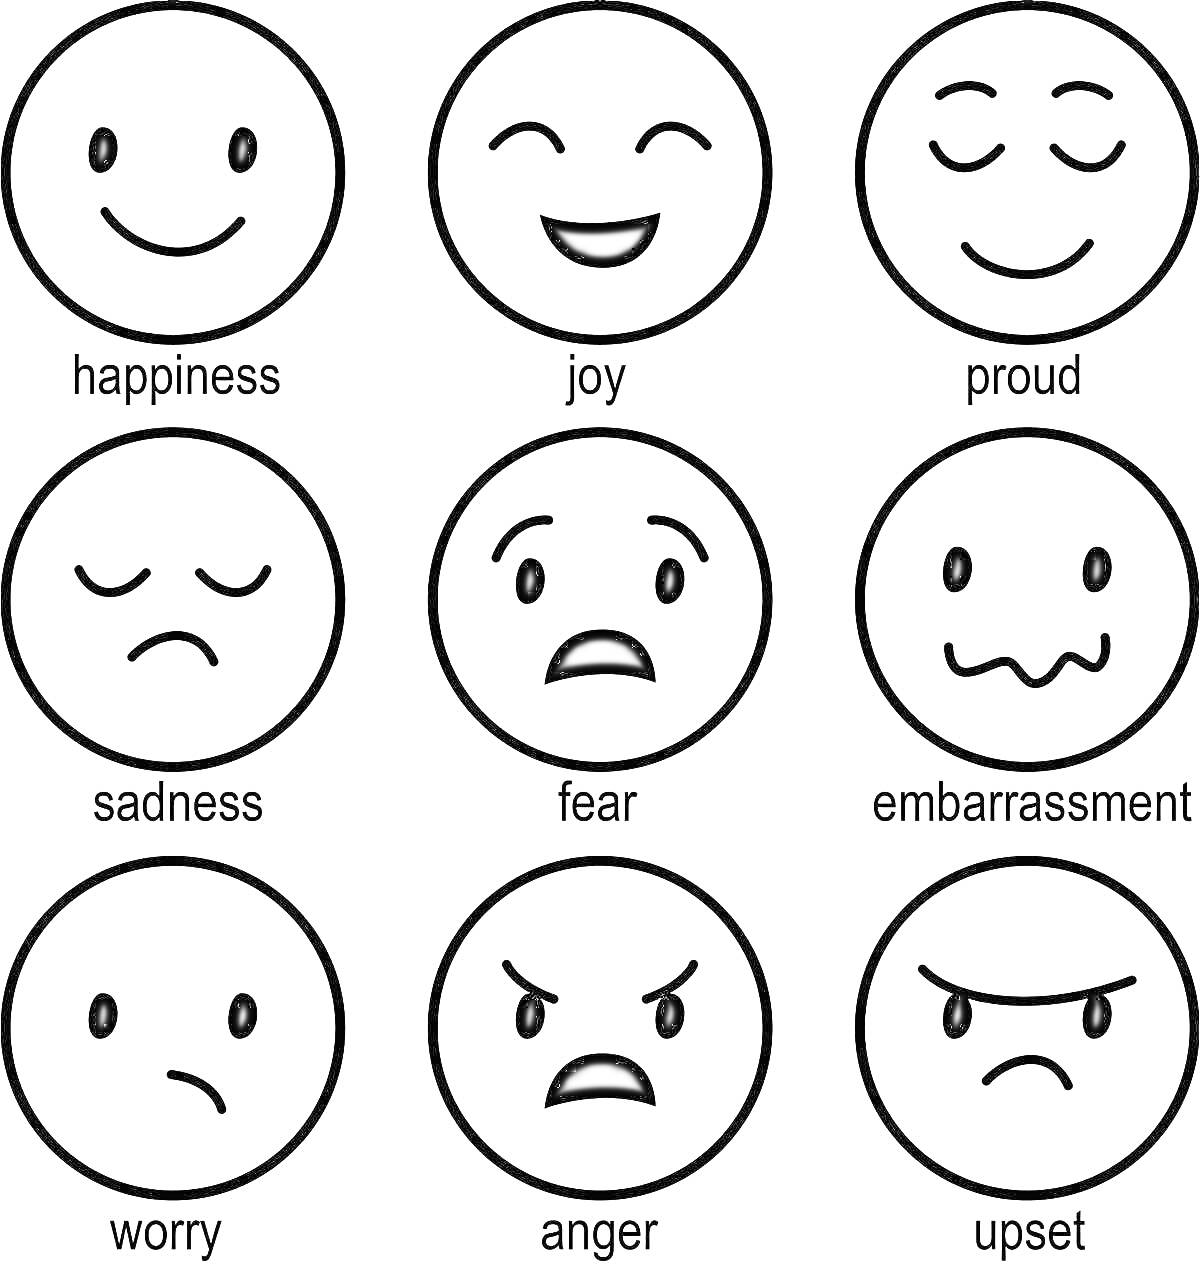 Раскраска Раскраска с эмоциями: радость, счастье, гордость, грусть, страх, смущение, волнение, гнев, расстройство